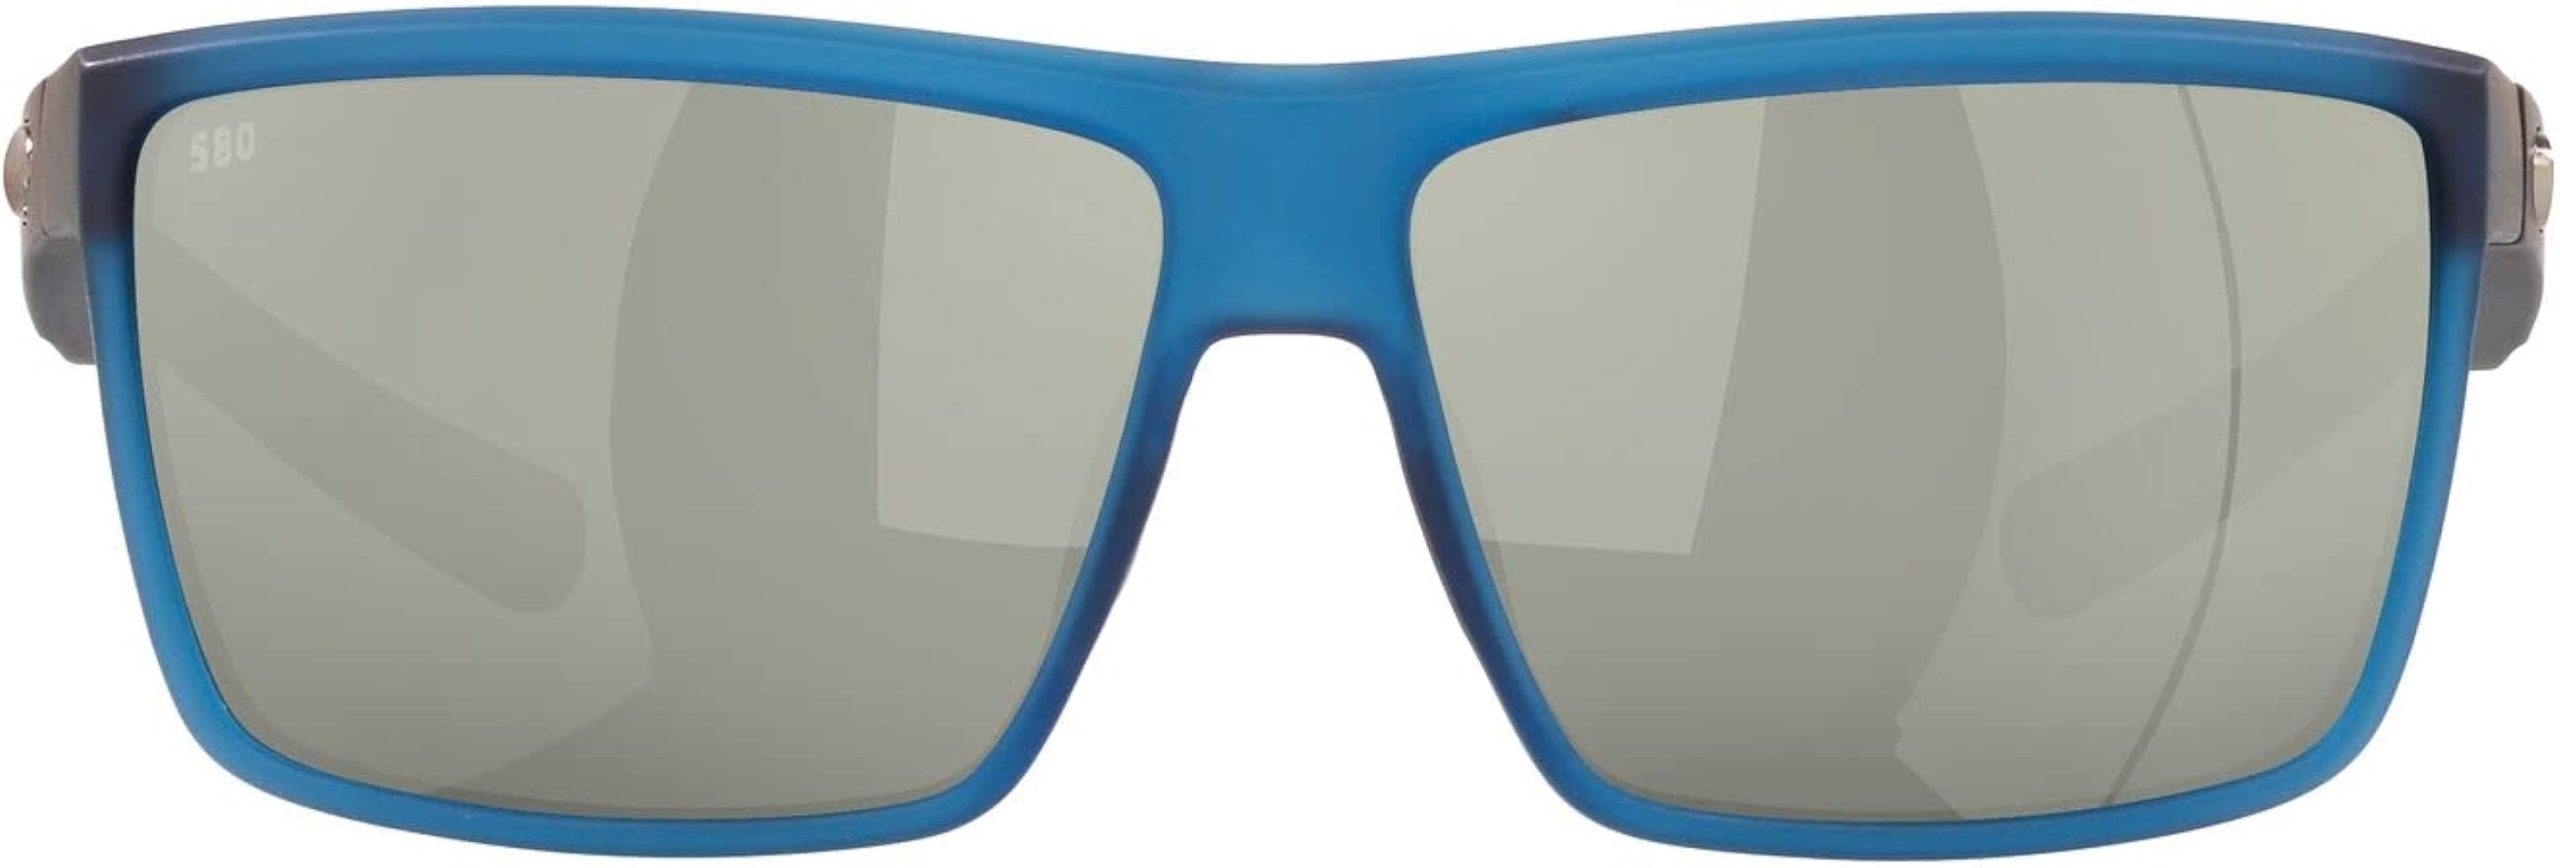 Costa Del Mar Rinconcito Sunglasses Review